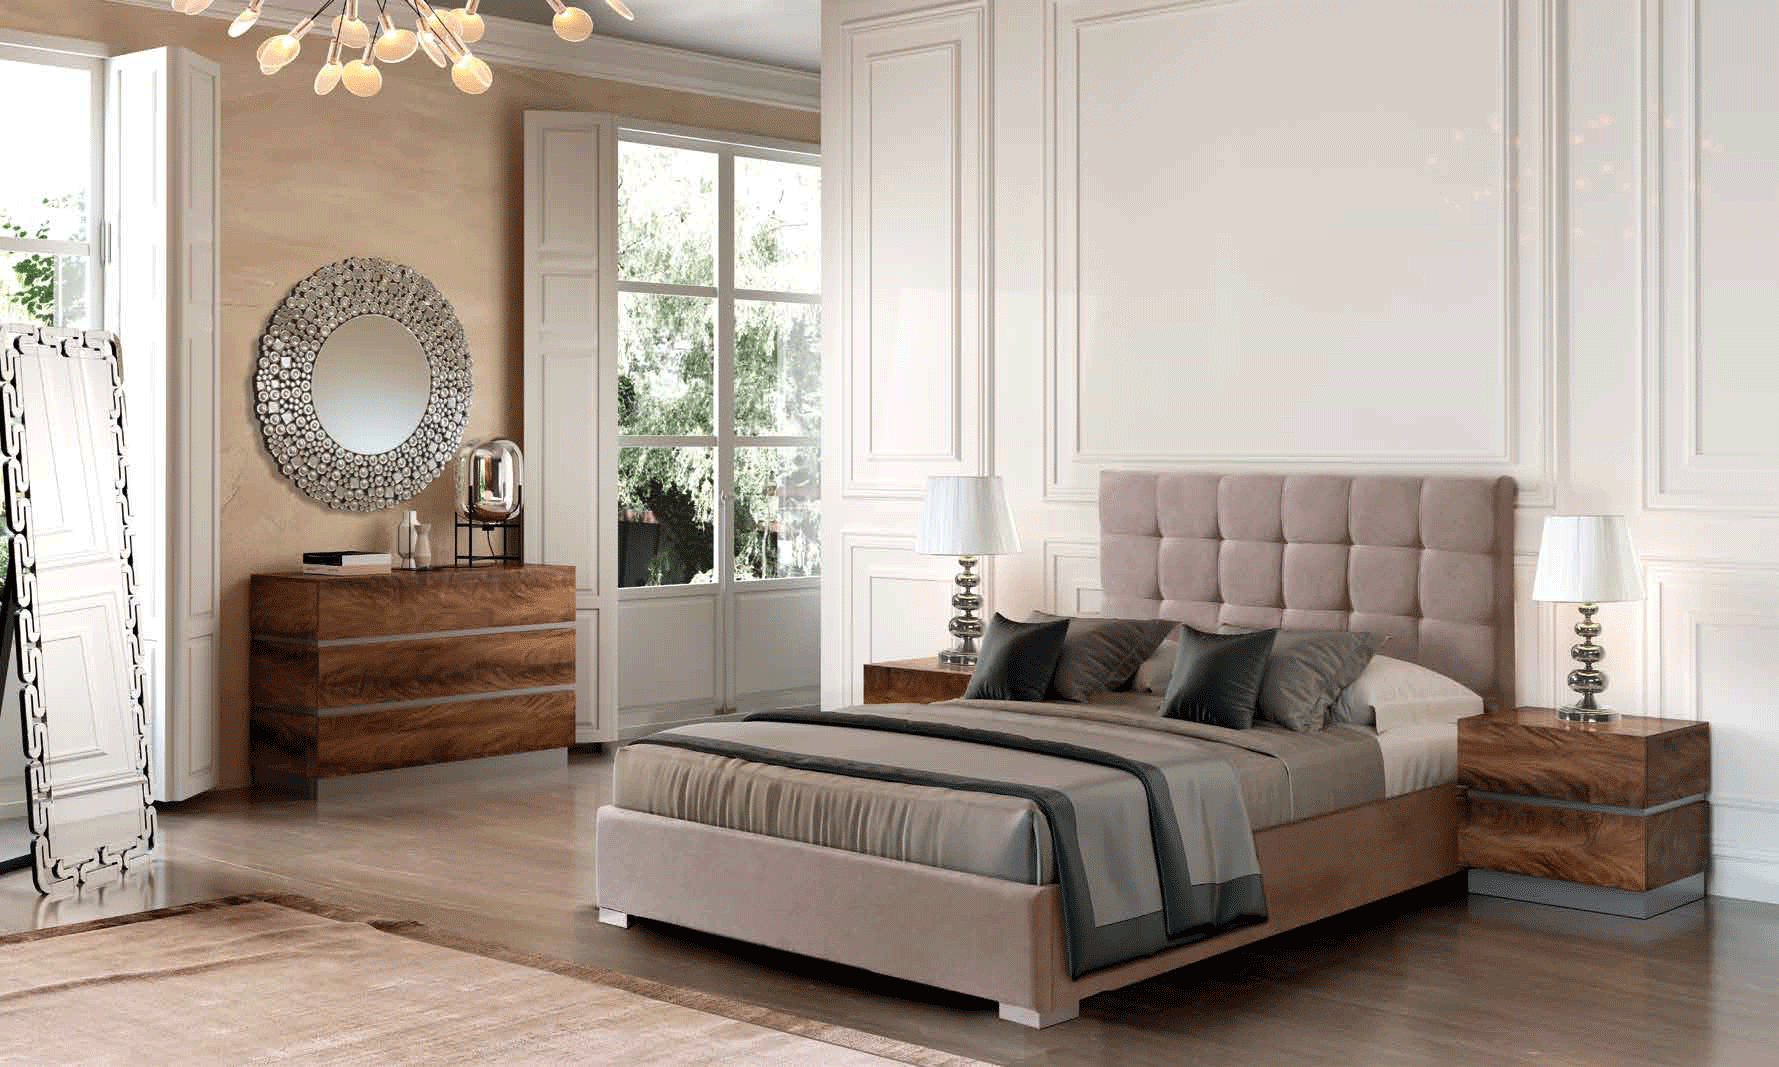 Brands Arredoclassic Living Room, Italy 875 Belen, C-151, M-151, E-417, E418, LT-3499S